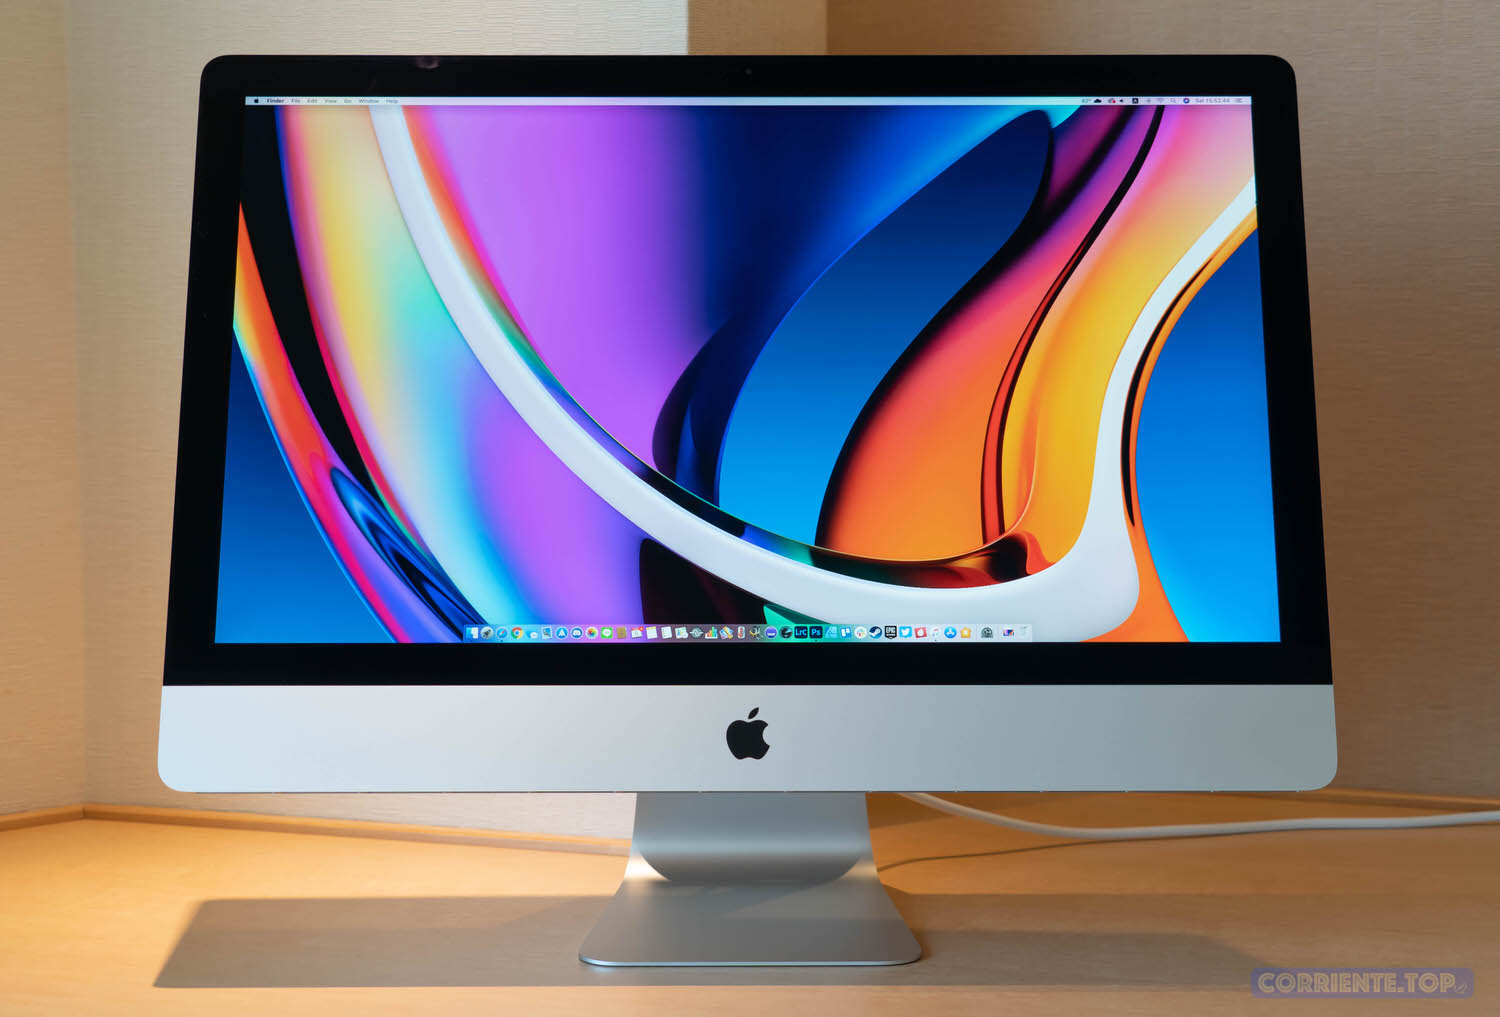 クリアランス セール iMac 2020 3.8Ghz 8コア i7 27インチ 5K 